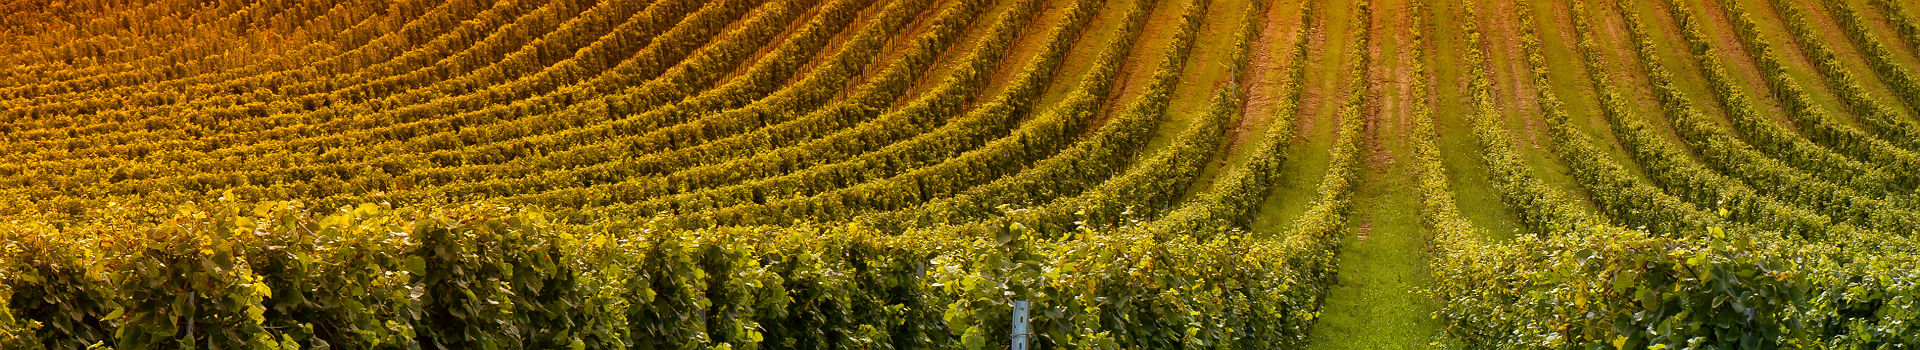 Vignoble en Bourgogne - France